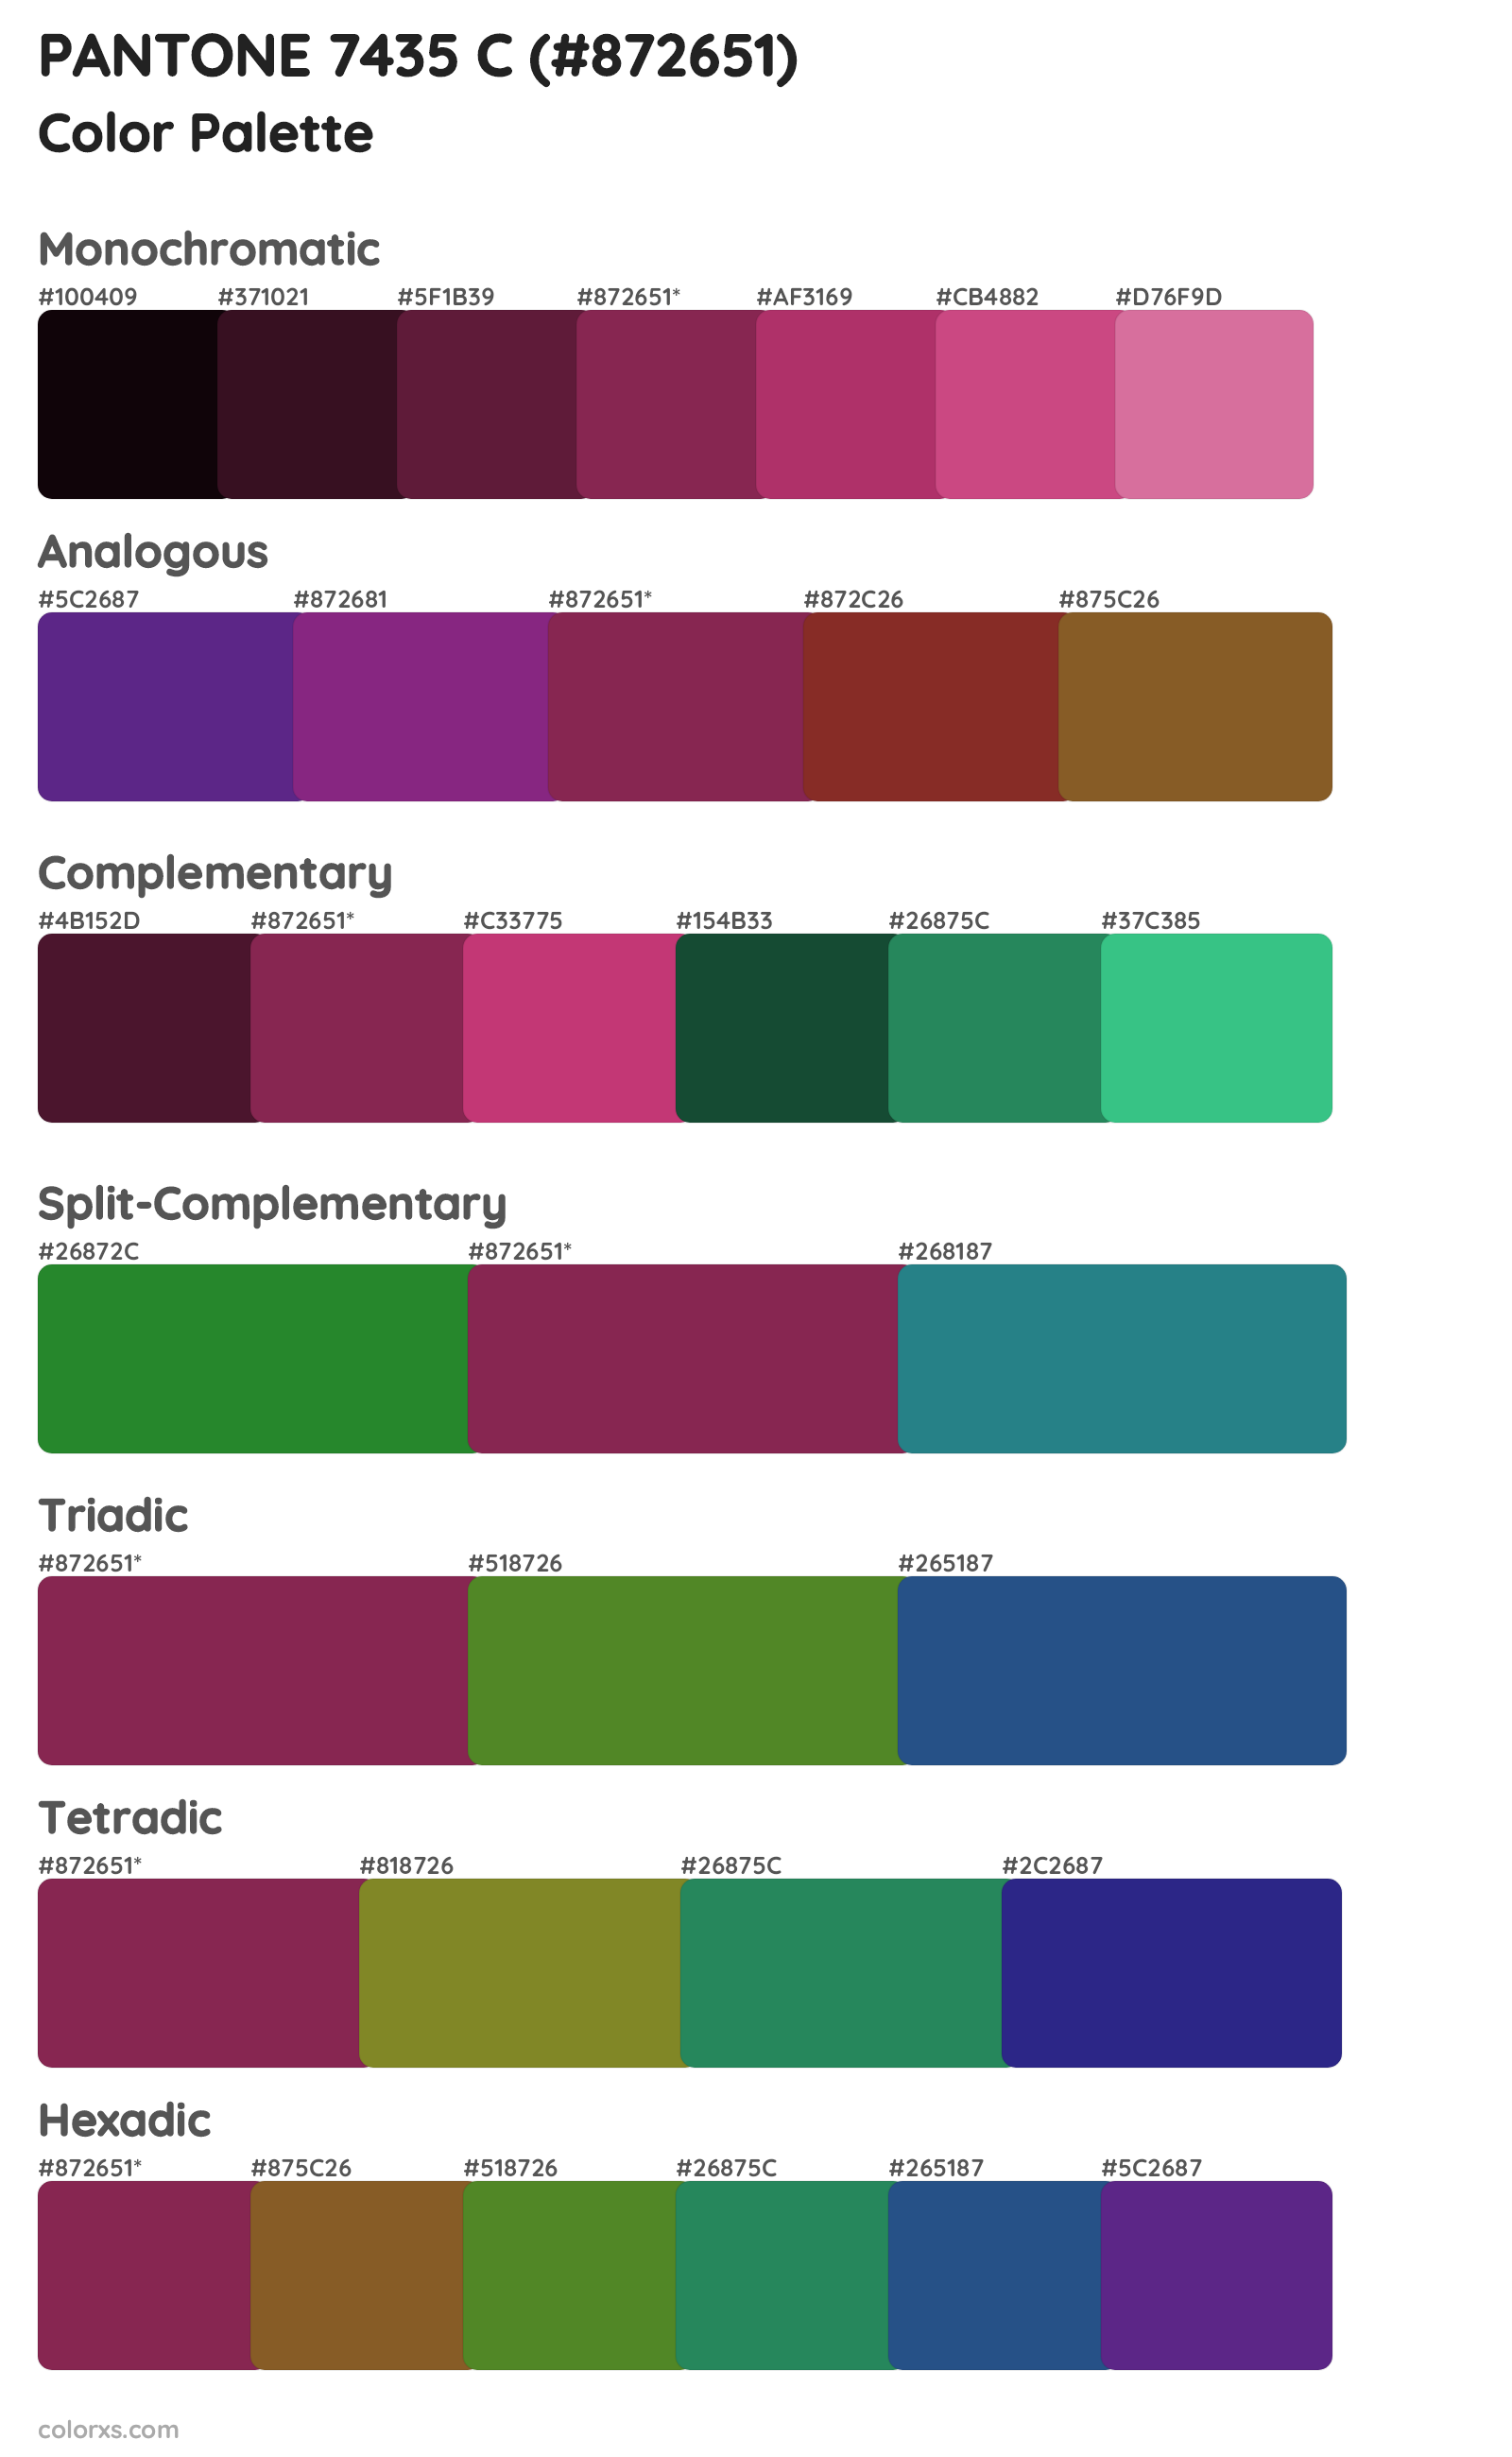 PANTONE 7435 C Color Scheme Palettes